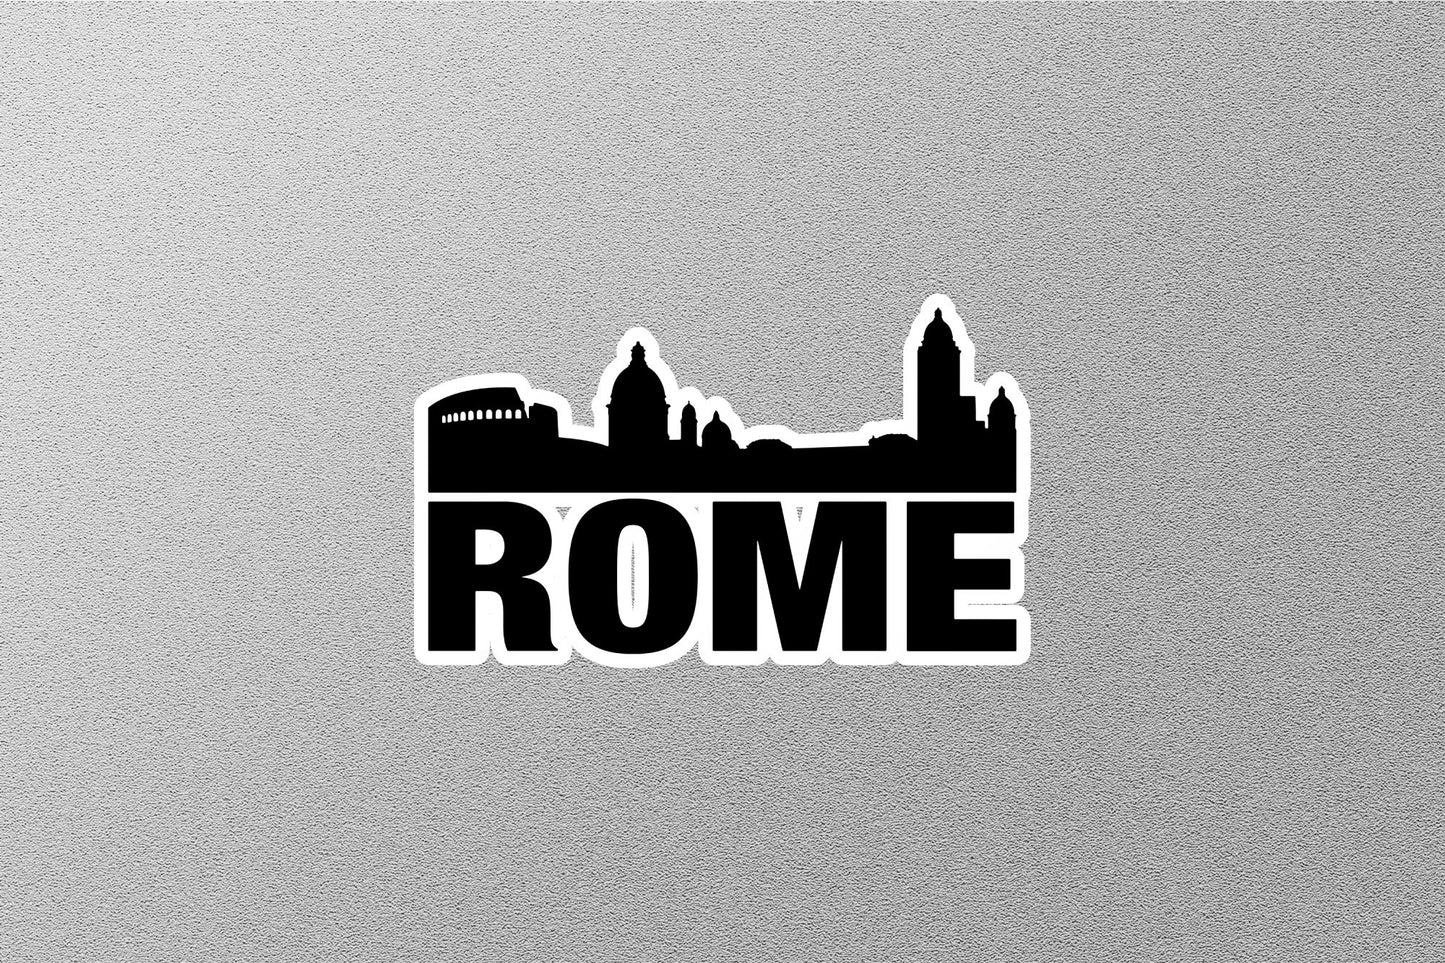 Rome Skyline Sticker